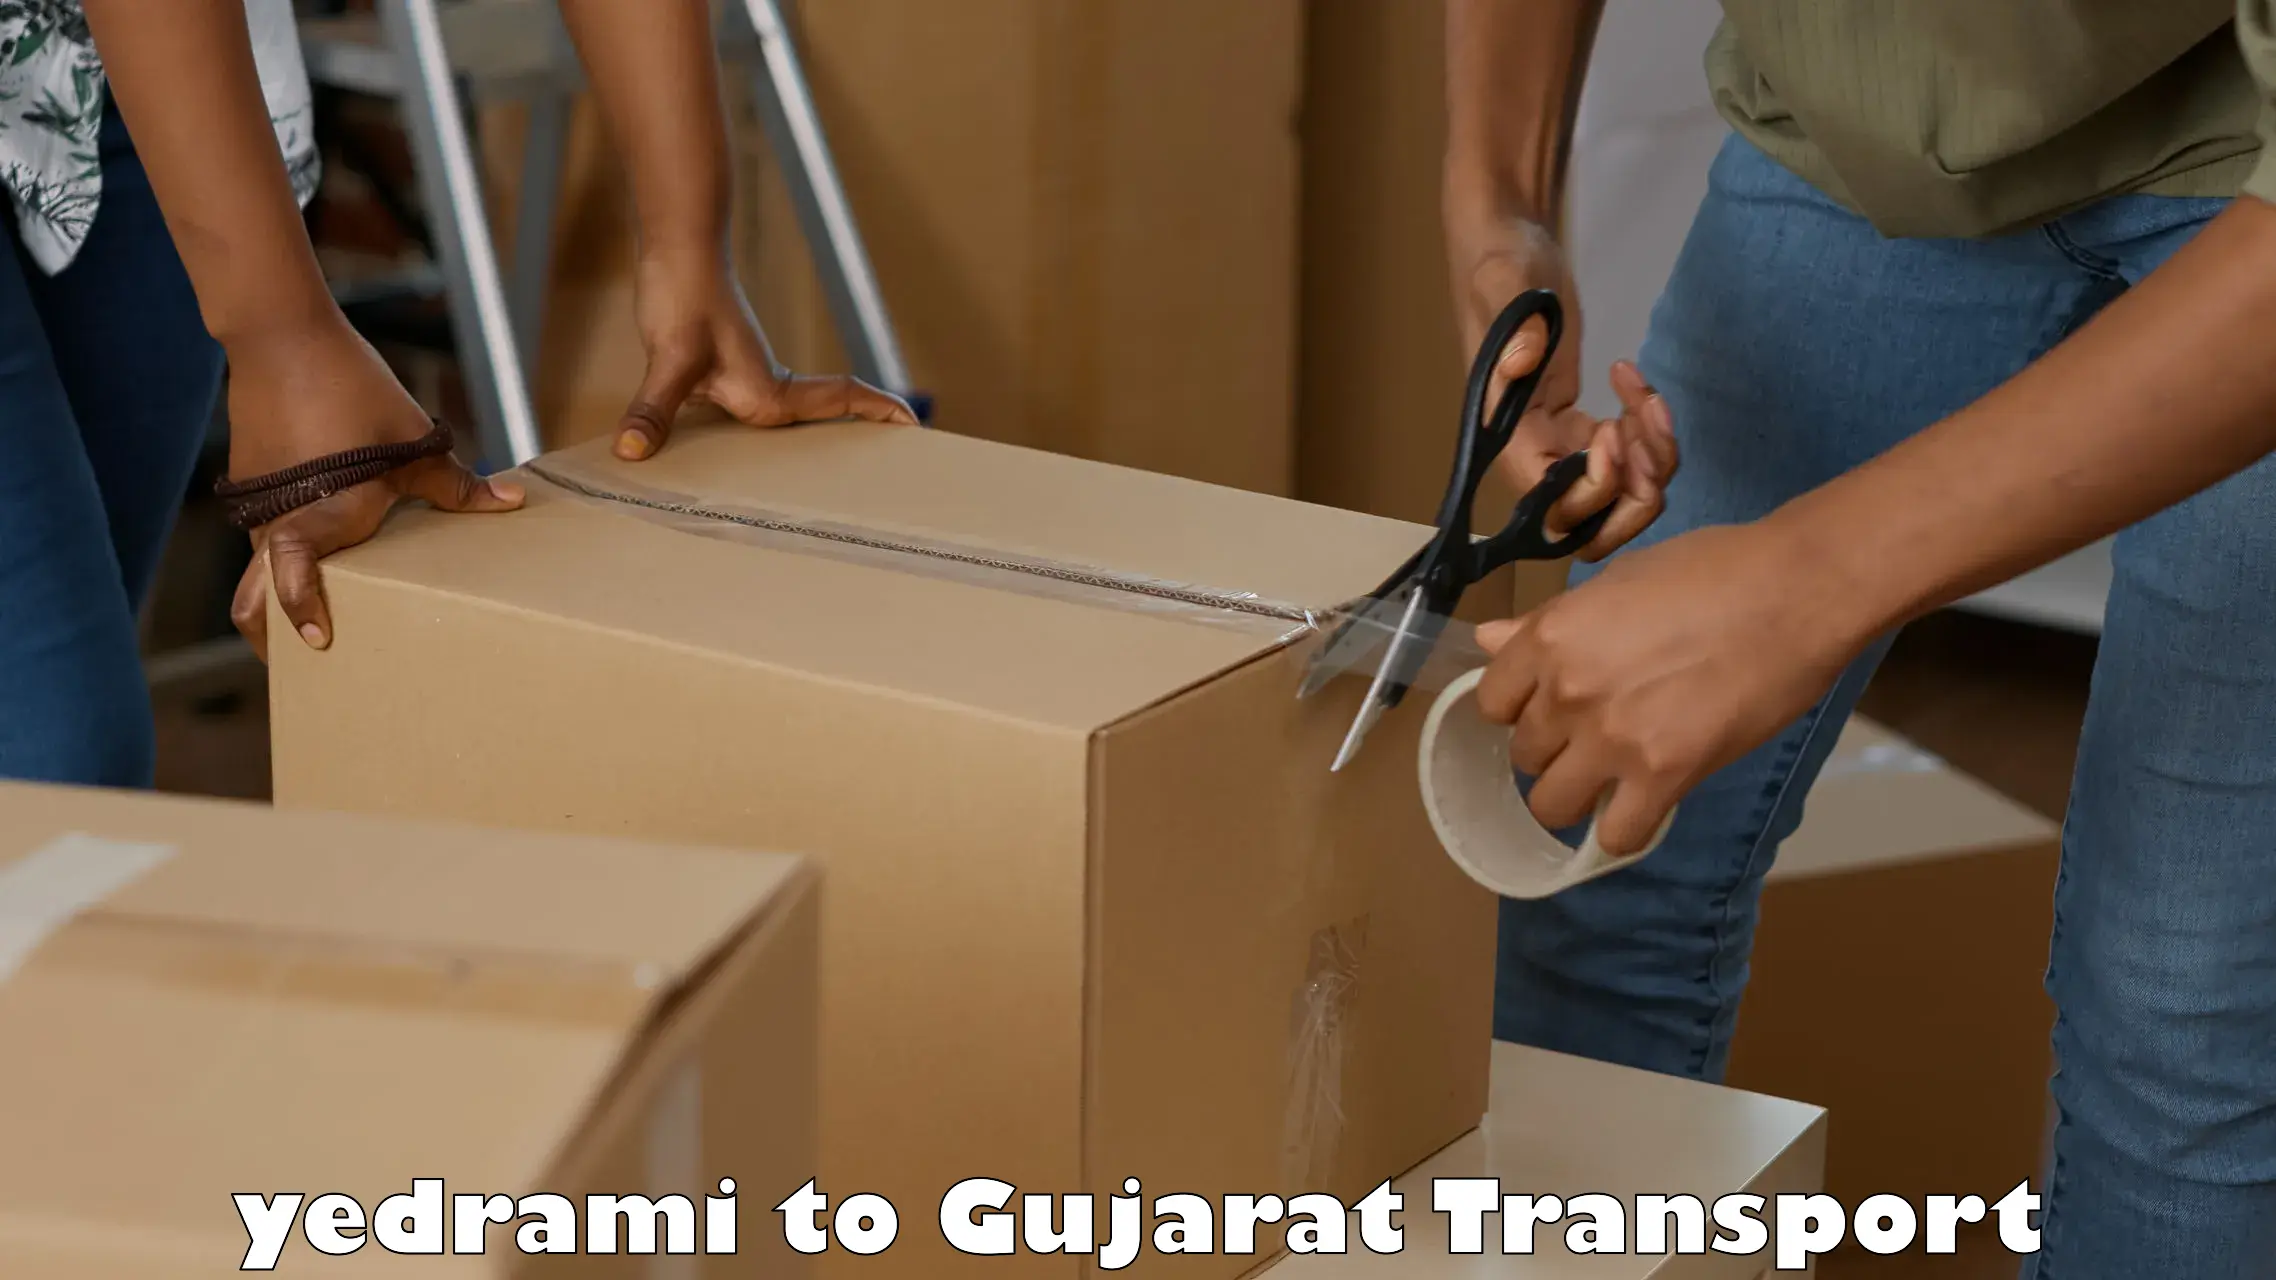 Nearest transport service yedrami to Dwarka